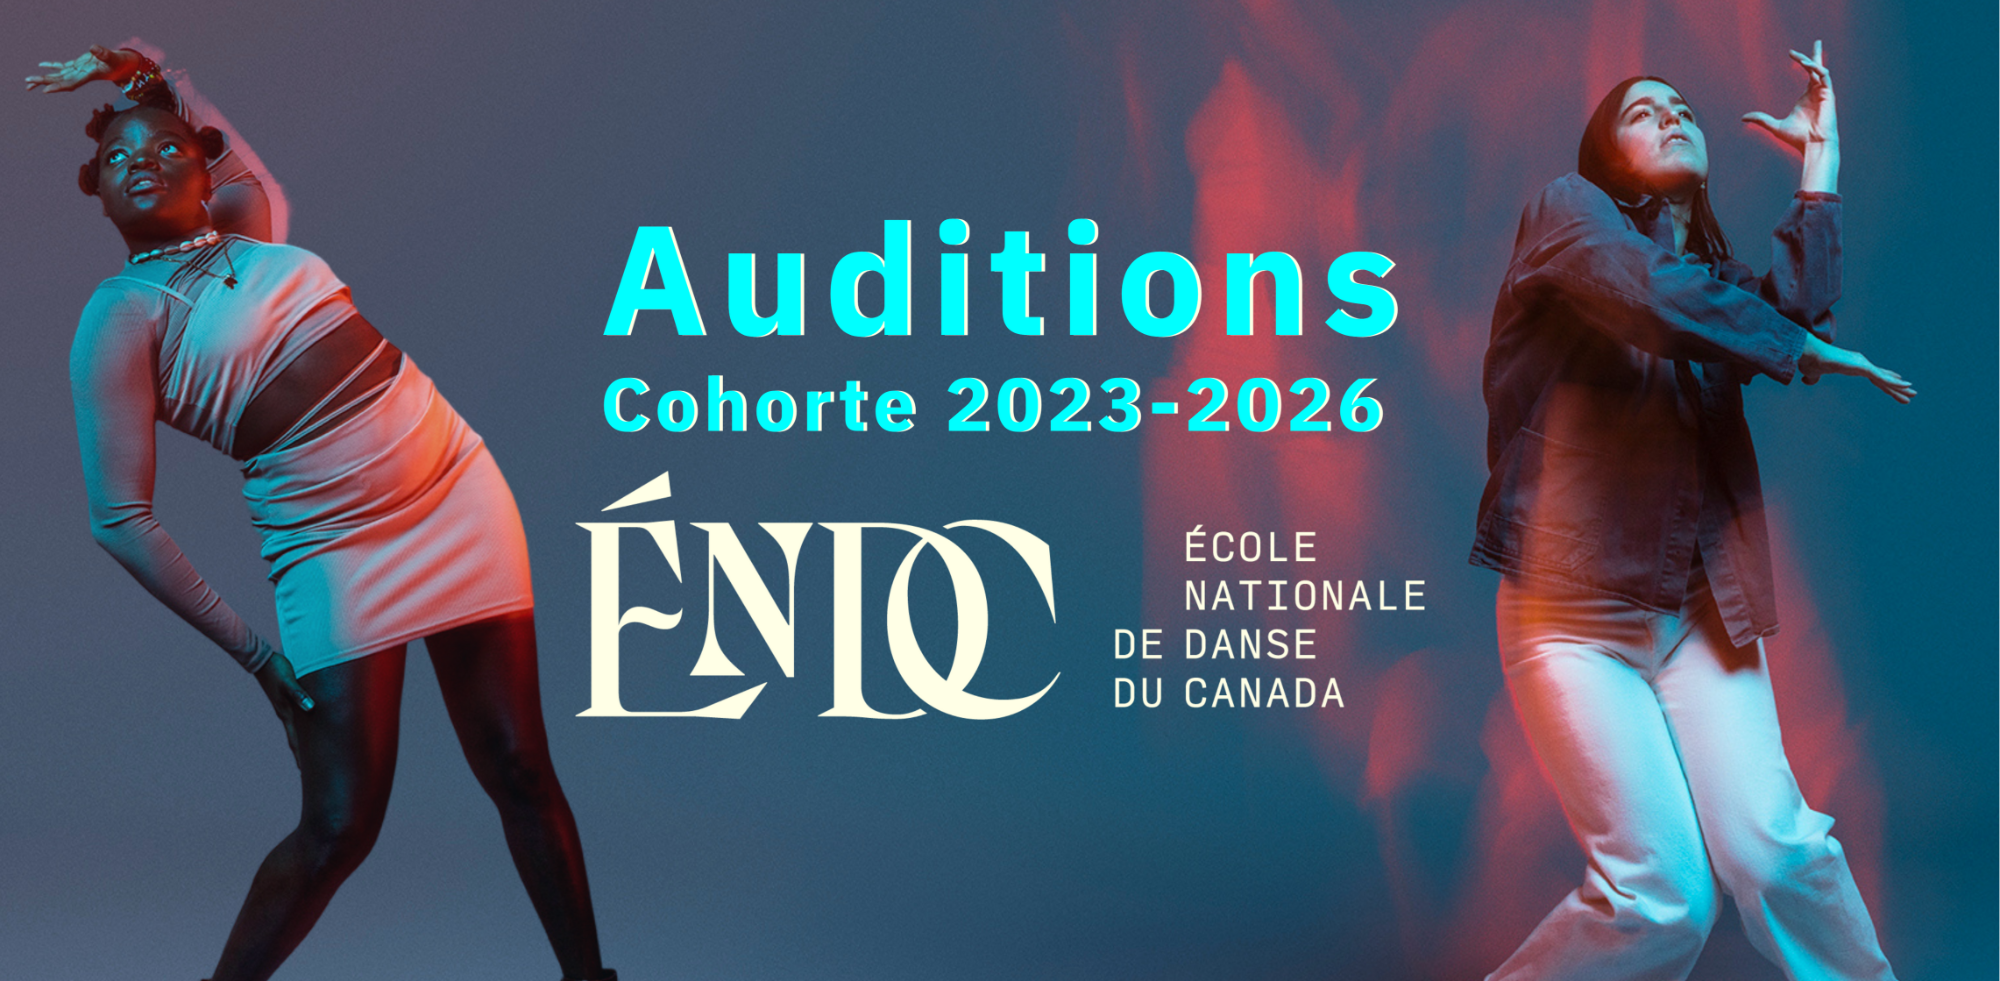 Auditions Cohorte 2023-2026 de l'École Nationale de Danse du Canada